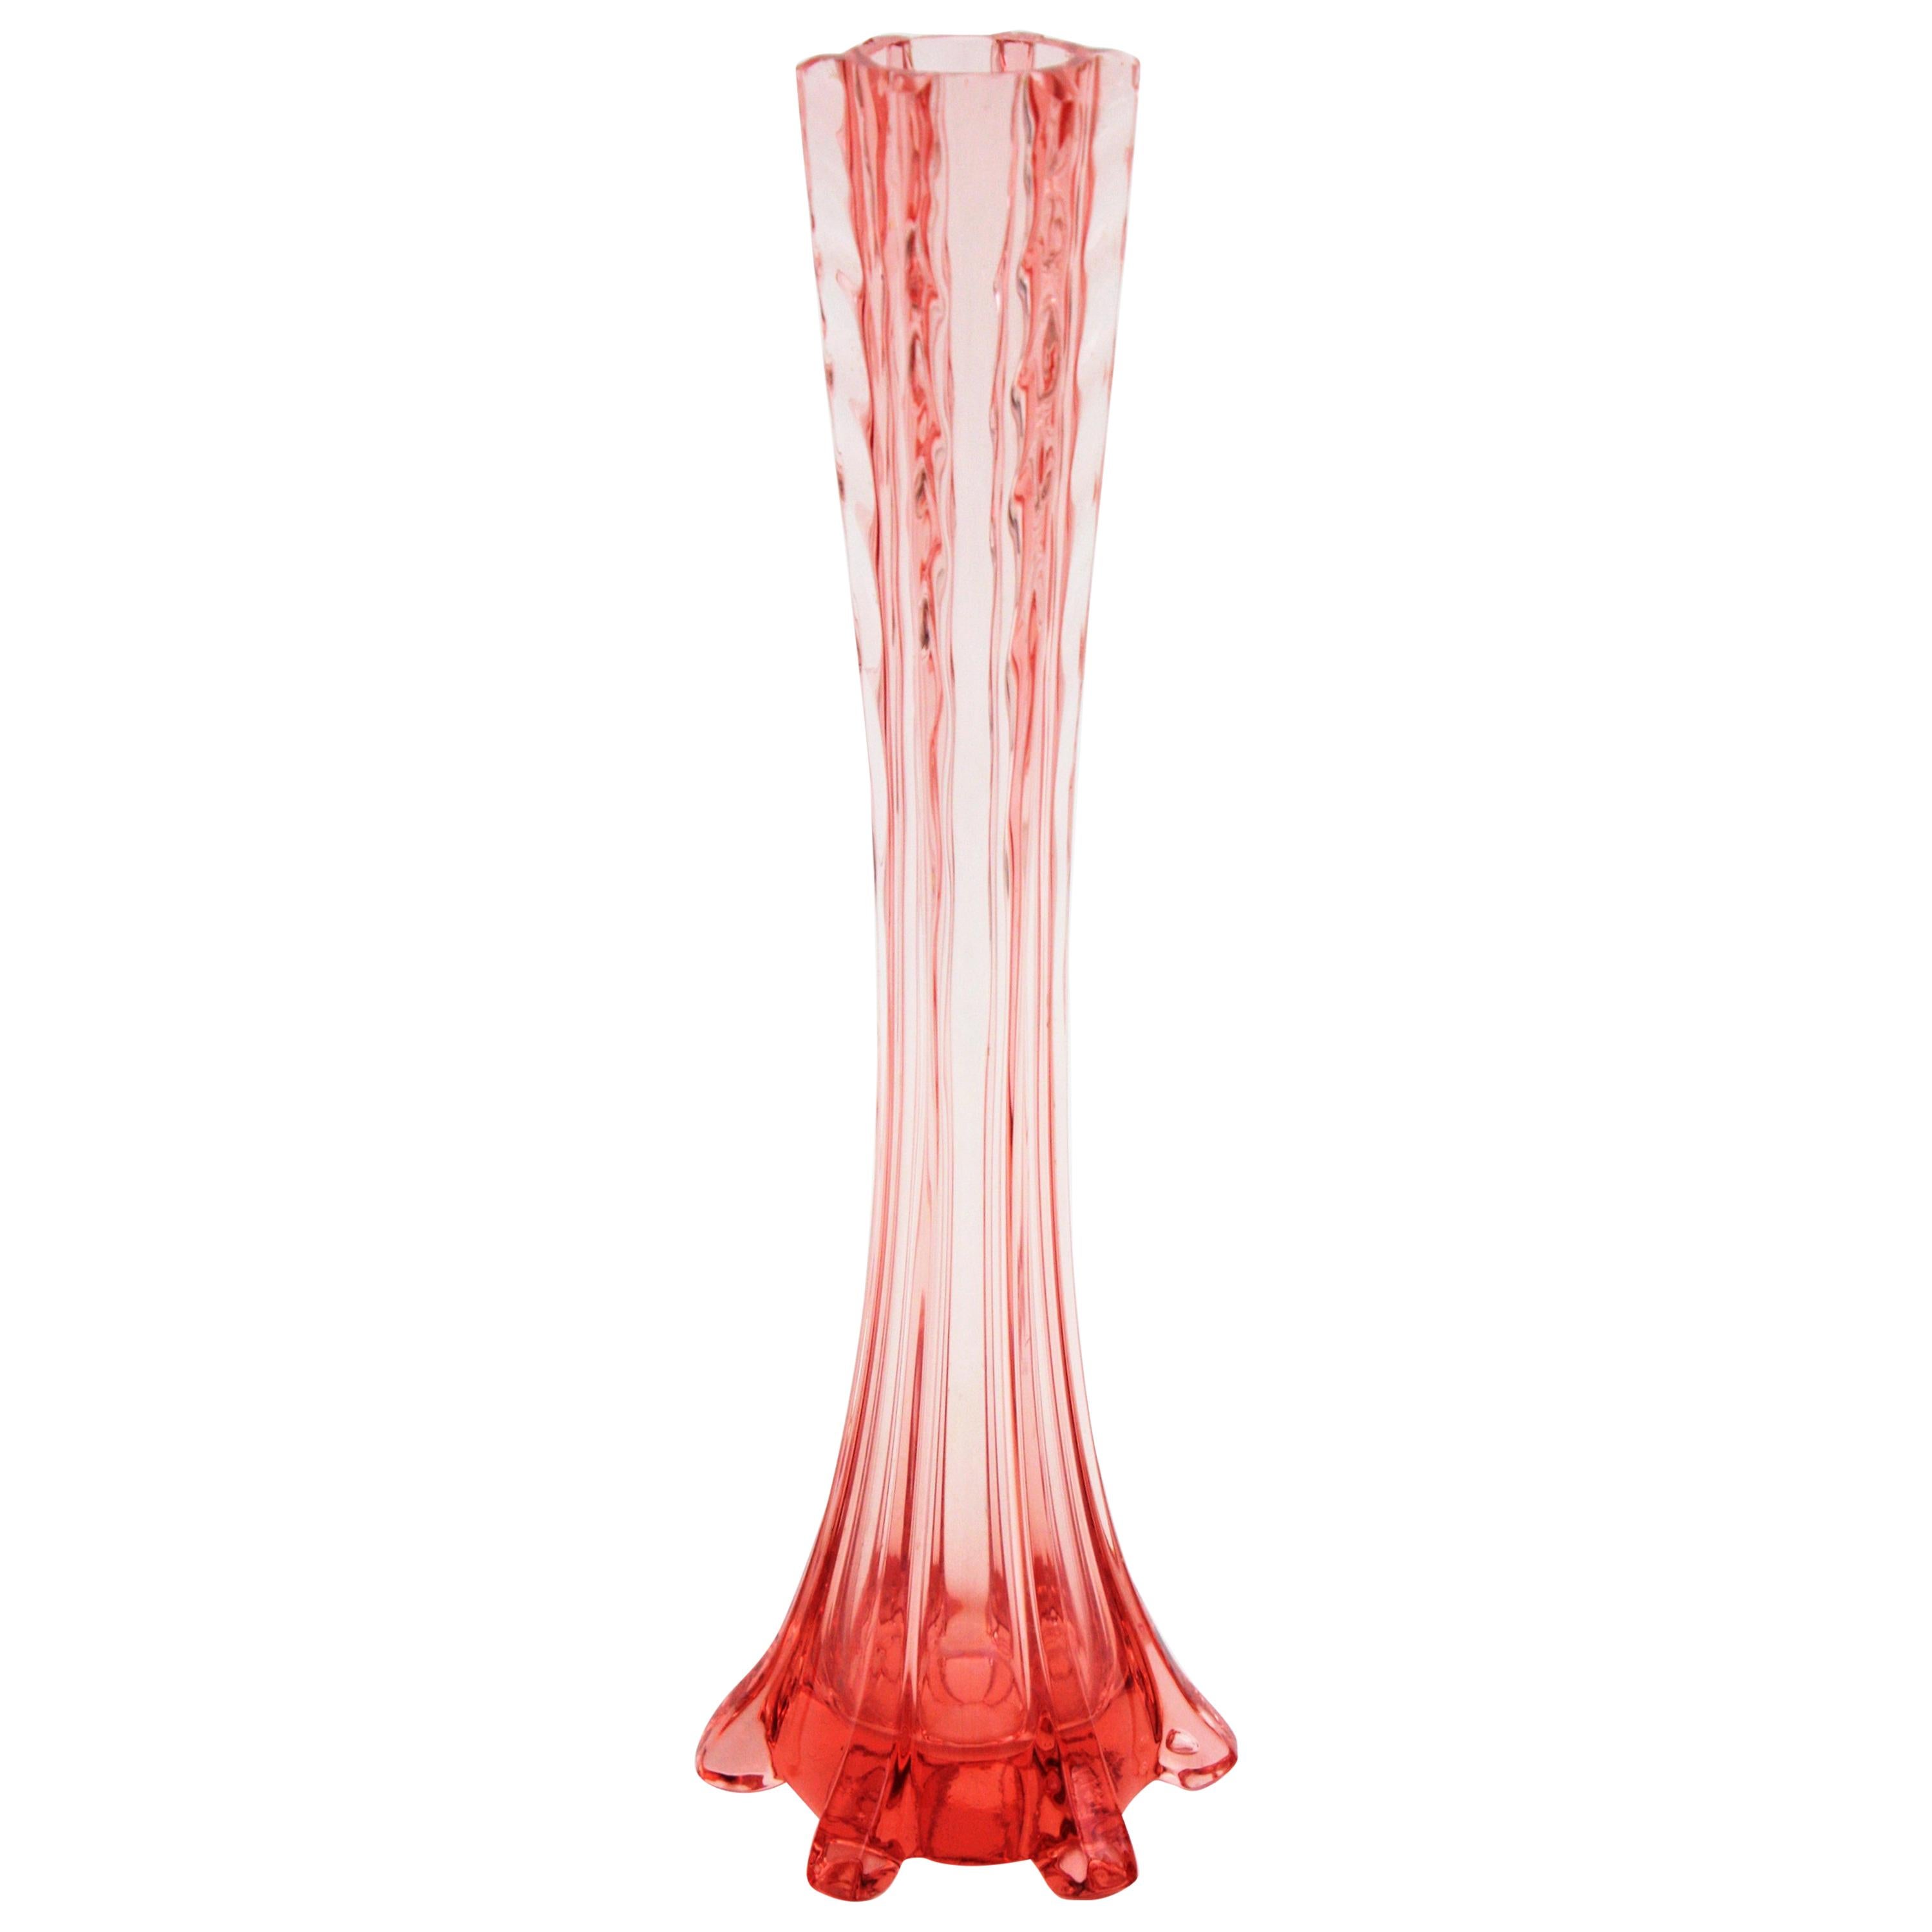 Stilvolle einblütige Vase im Baccarat-Stil in mundgeblasenem Bernsteinglas, Frankreich, 1930er Jahre.
Diese einblütige Vase mit langem Hals ist an den Seiten mit Glasapplikationen und am Hals mit Wirbeln verziert. Wunderschön, um allein oder als